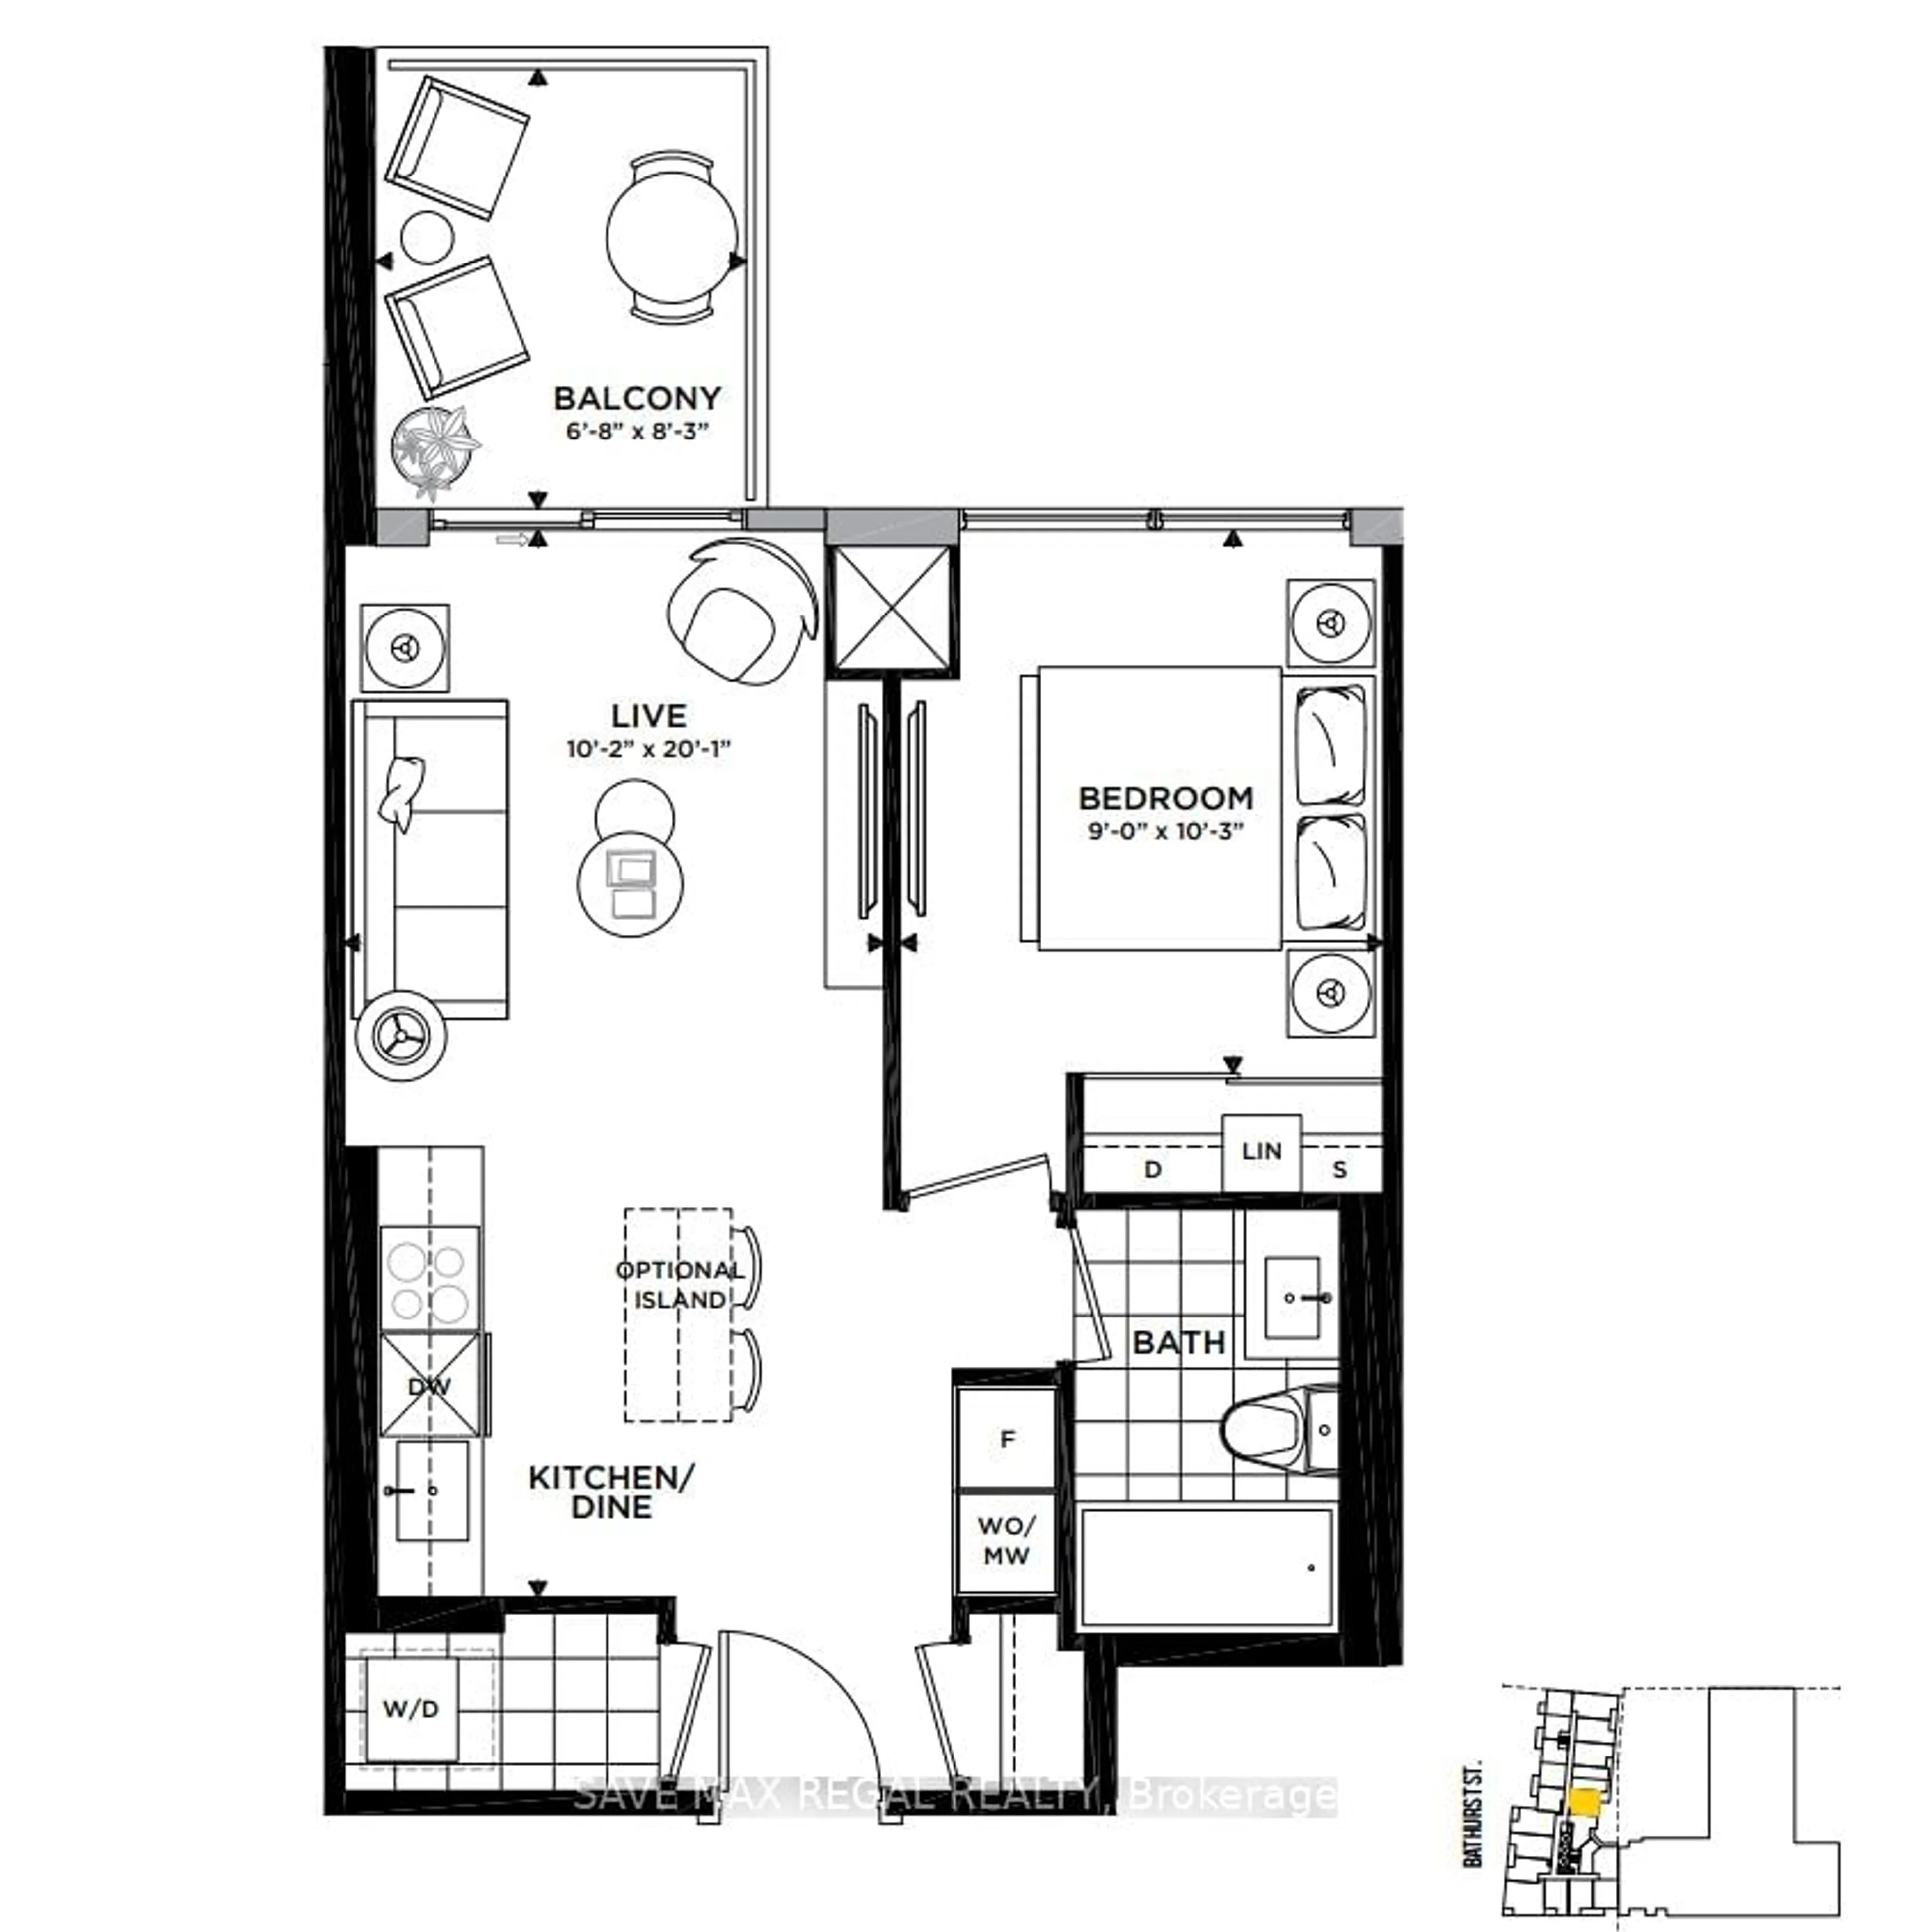 Floor plan for 27 Bathurst St #520W, Toronto Ontario M5V 2P1